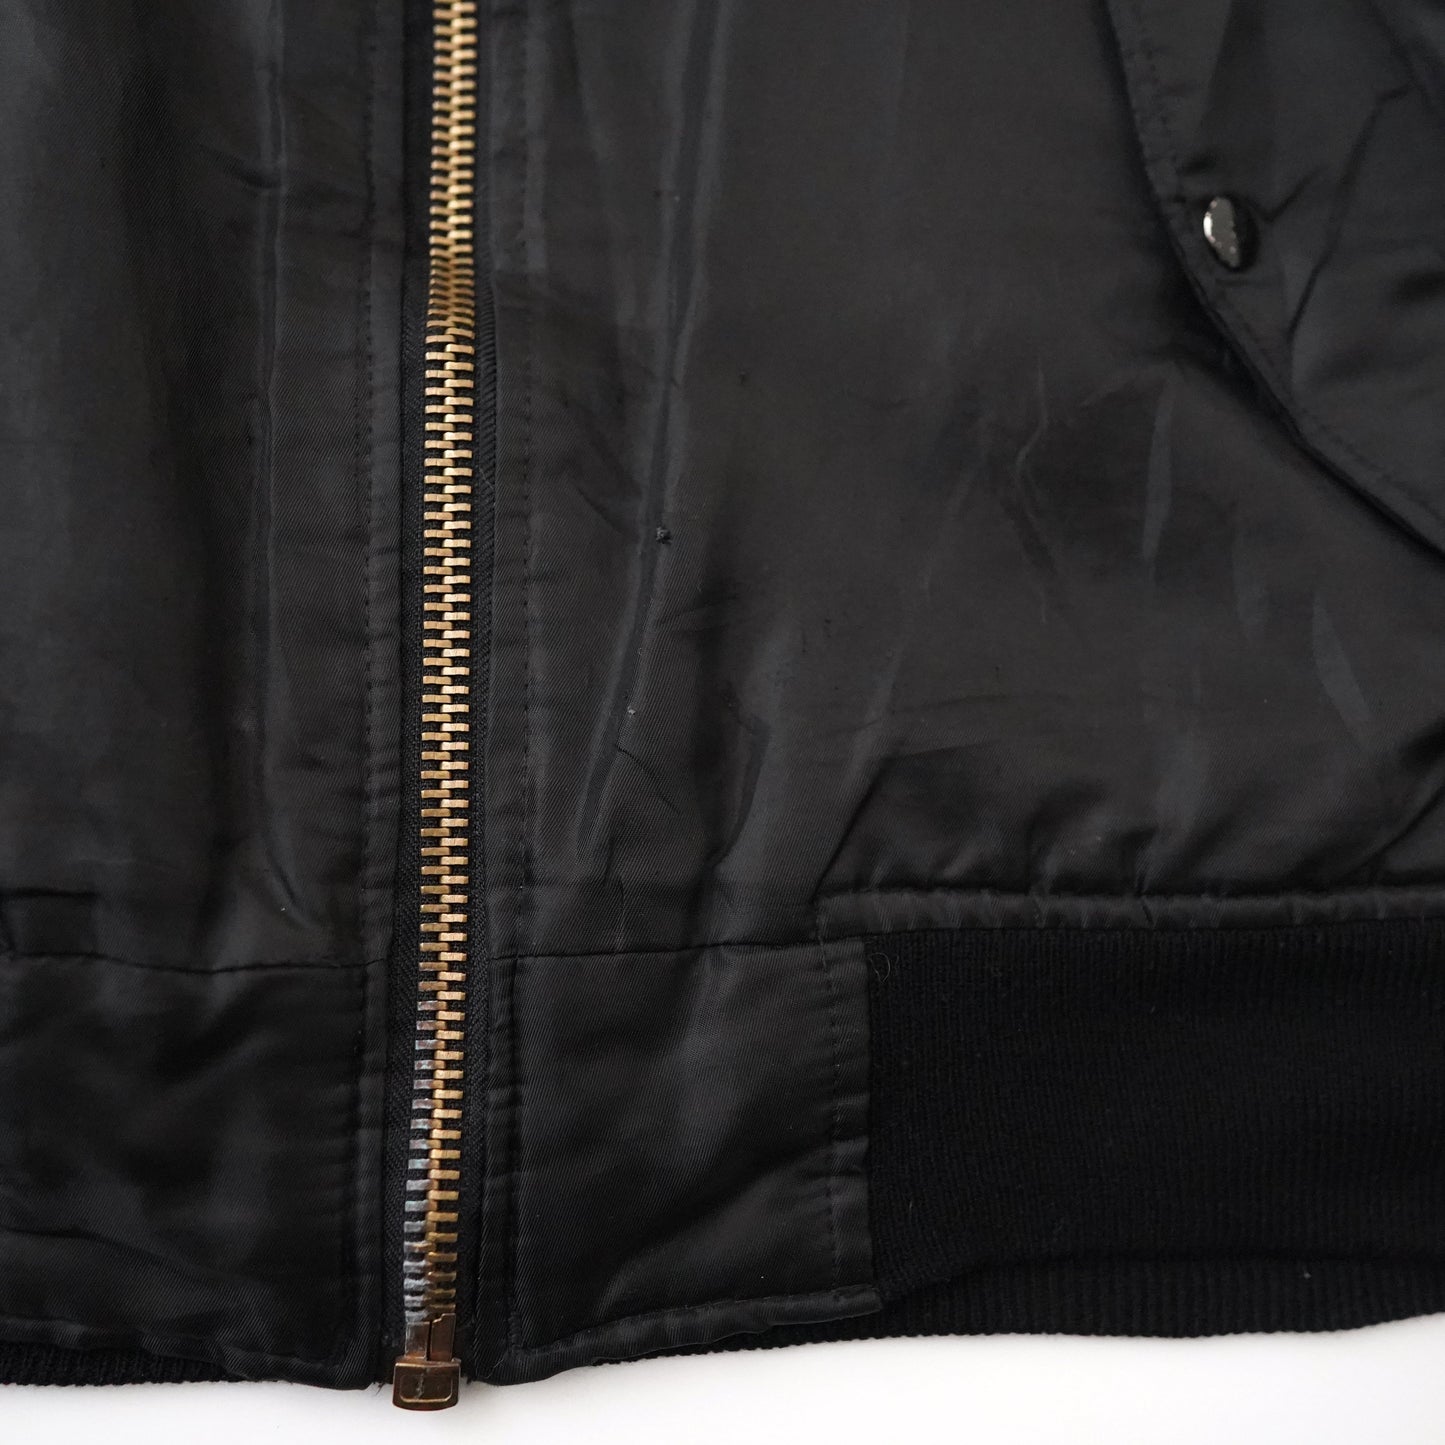 00s MA-1 nylon jacket